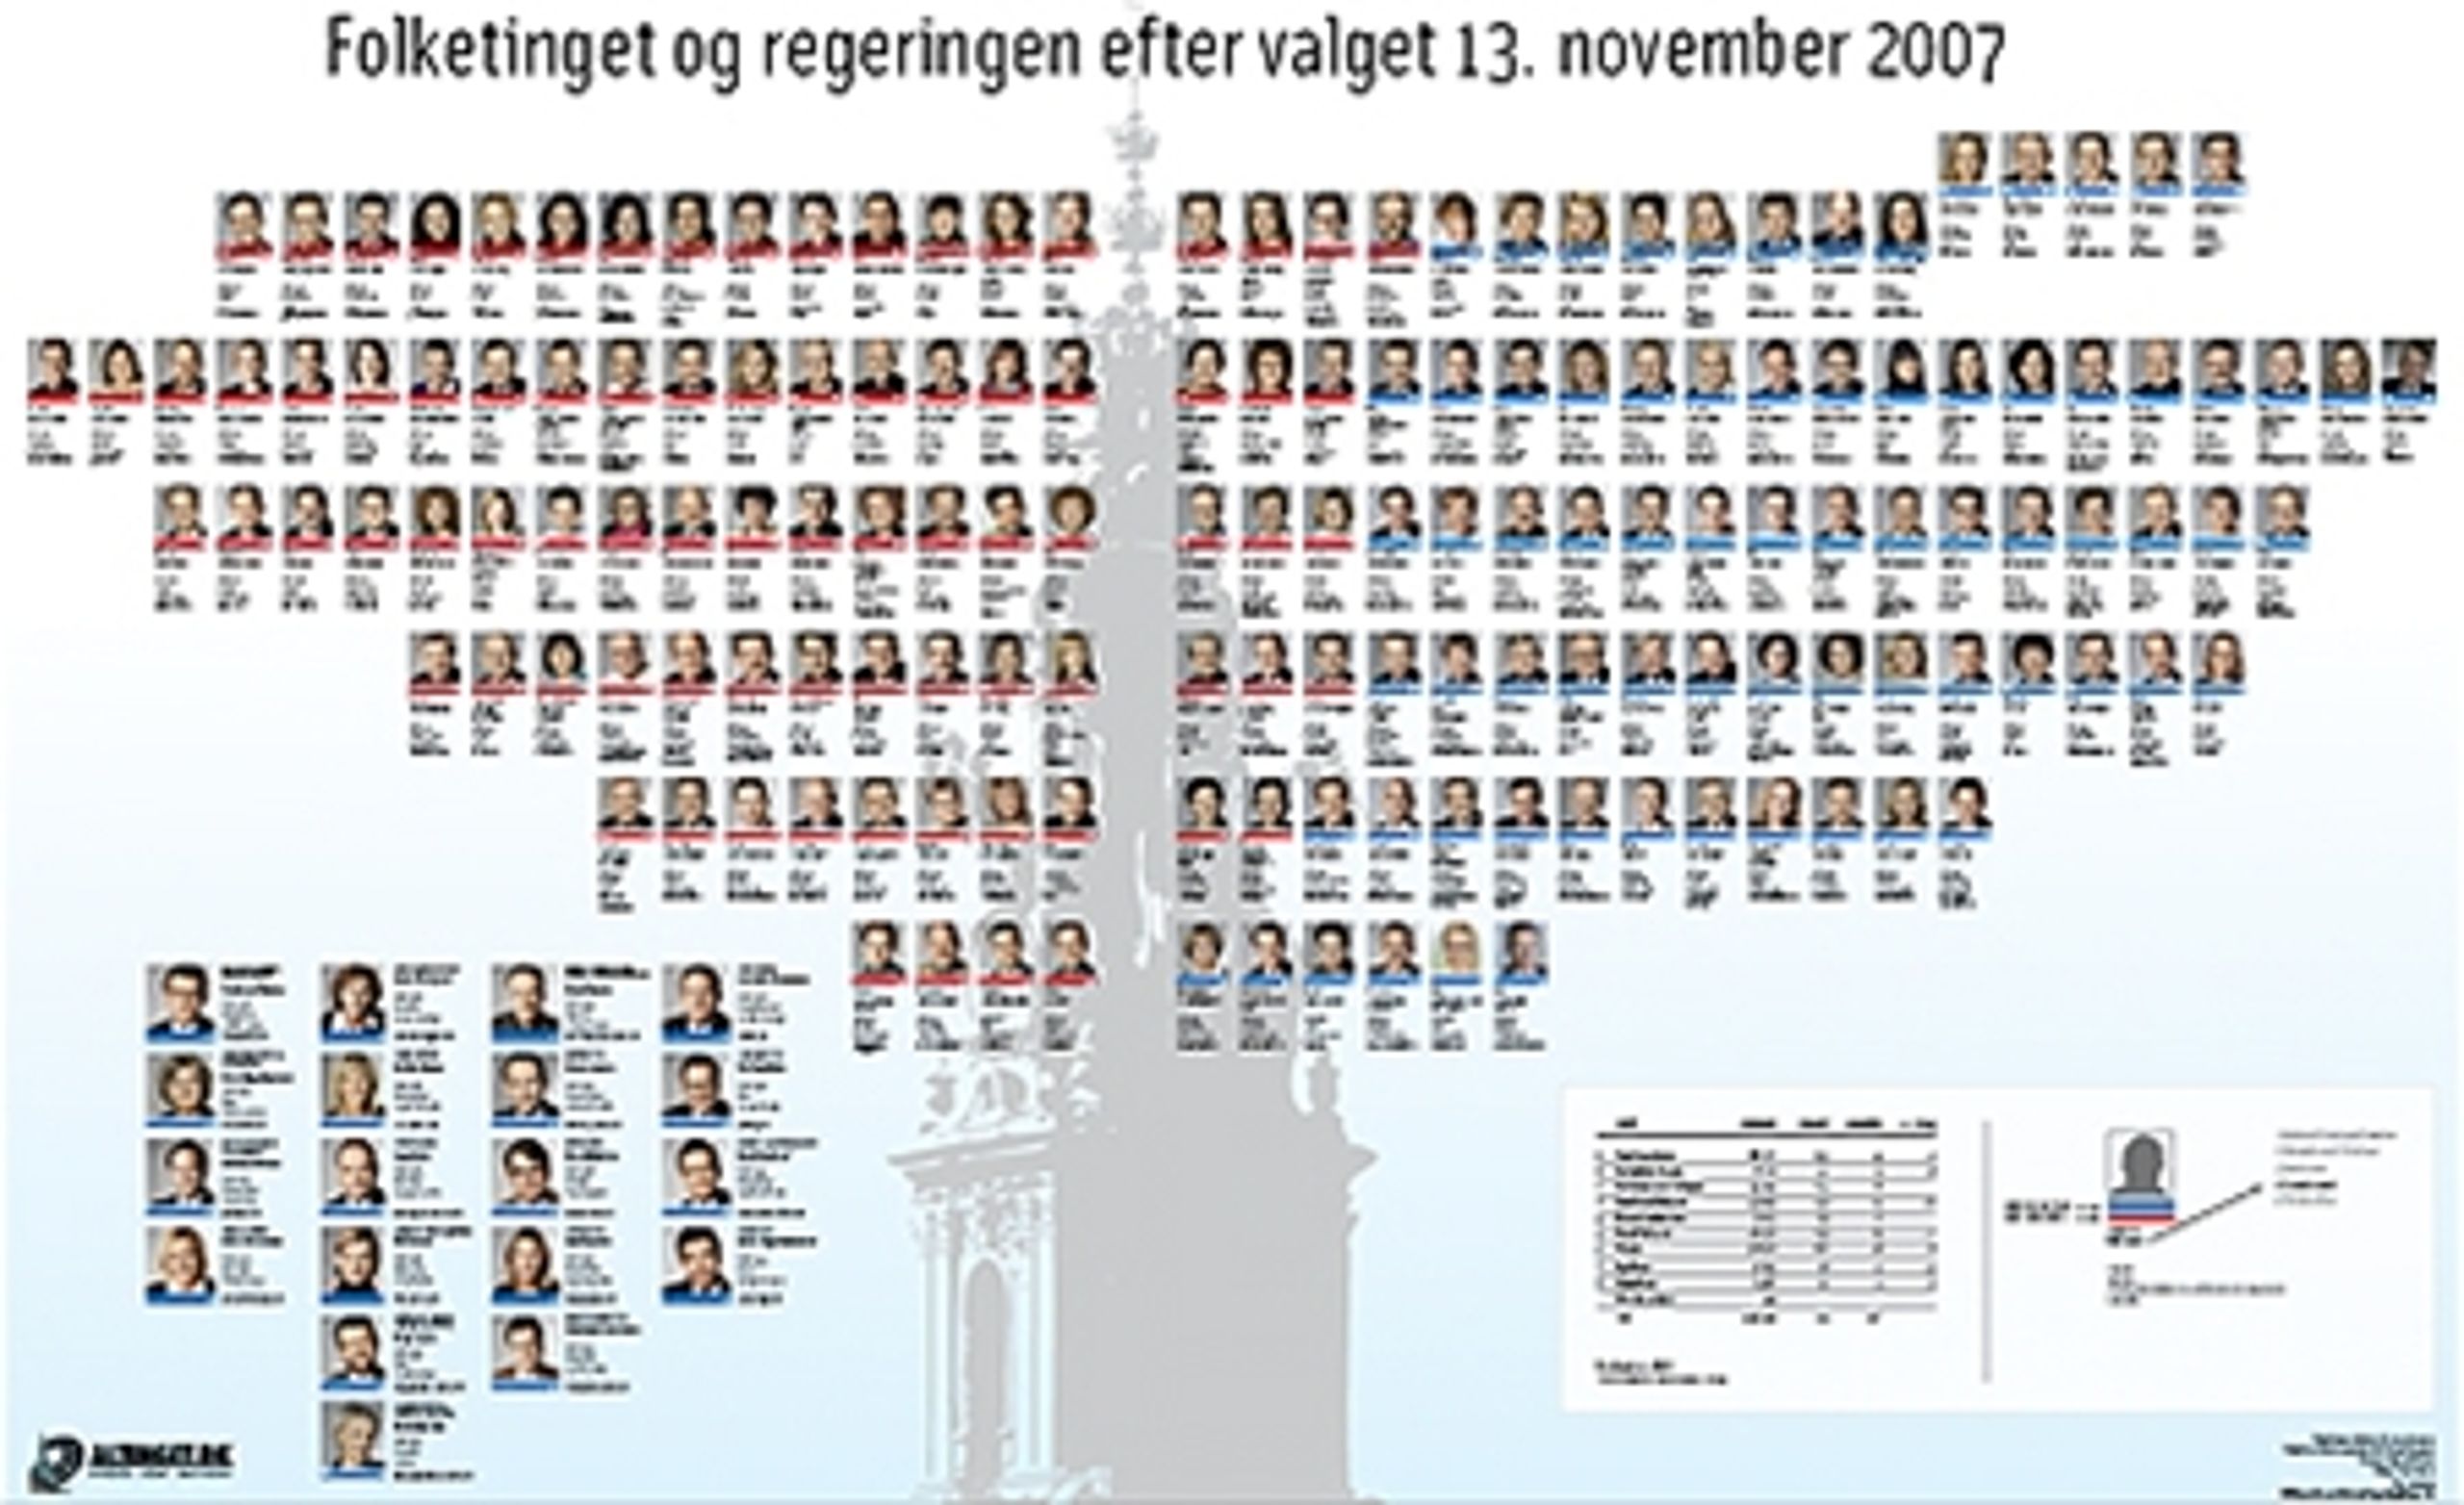 Altinget.dks plakat over regering og Folketing, som de ser ud efter 2007-valget, giver p&#229; samme tid et enkelt og informationssp&#230;kket overblik. 